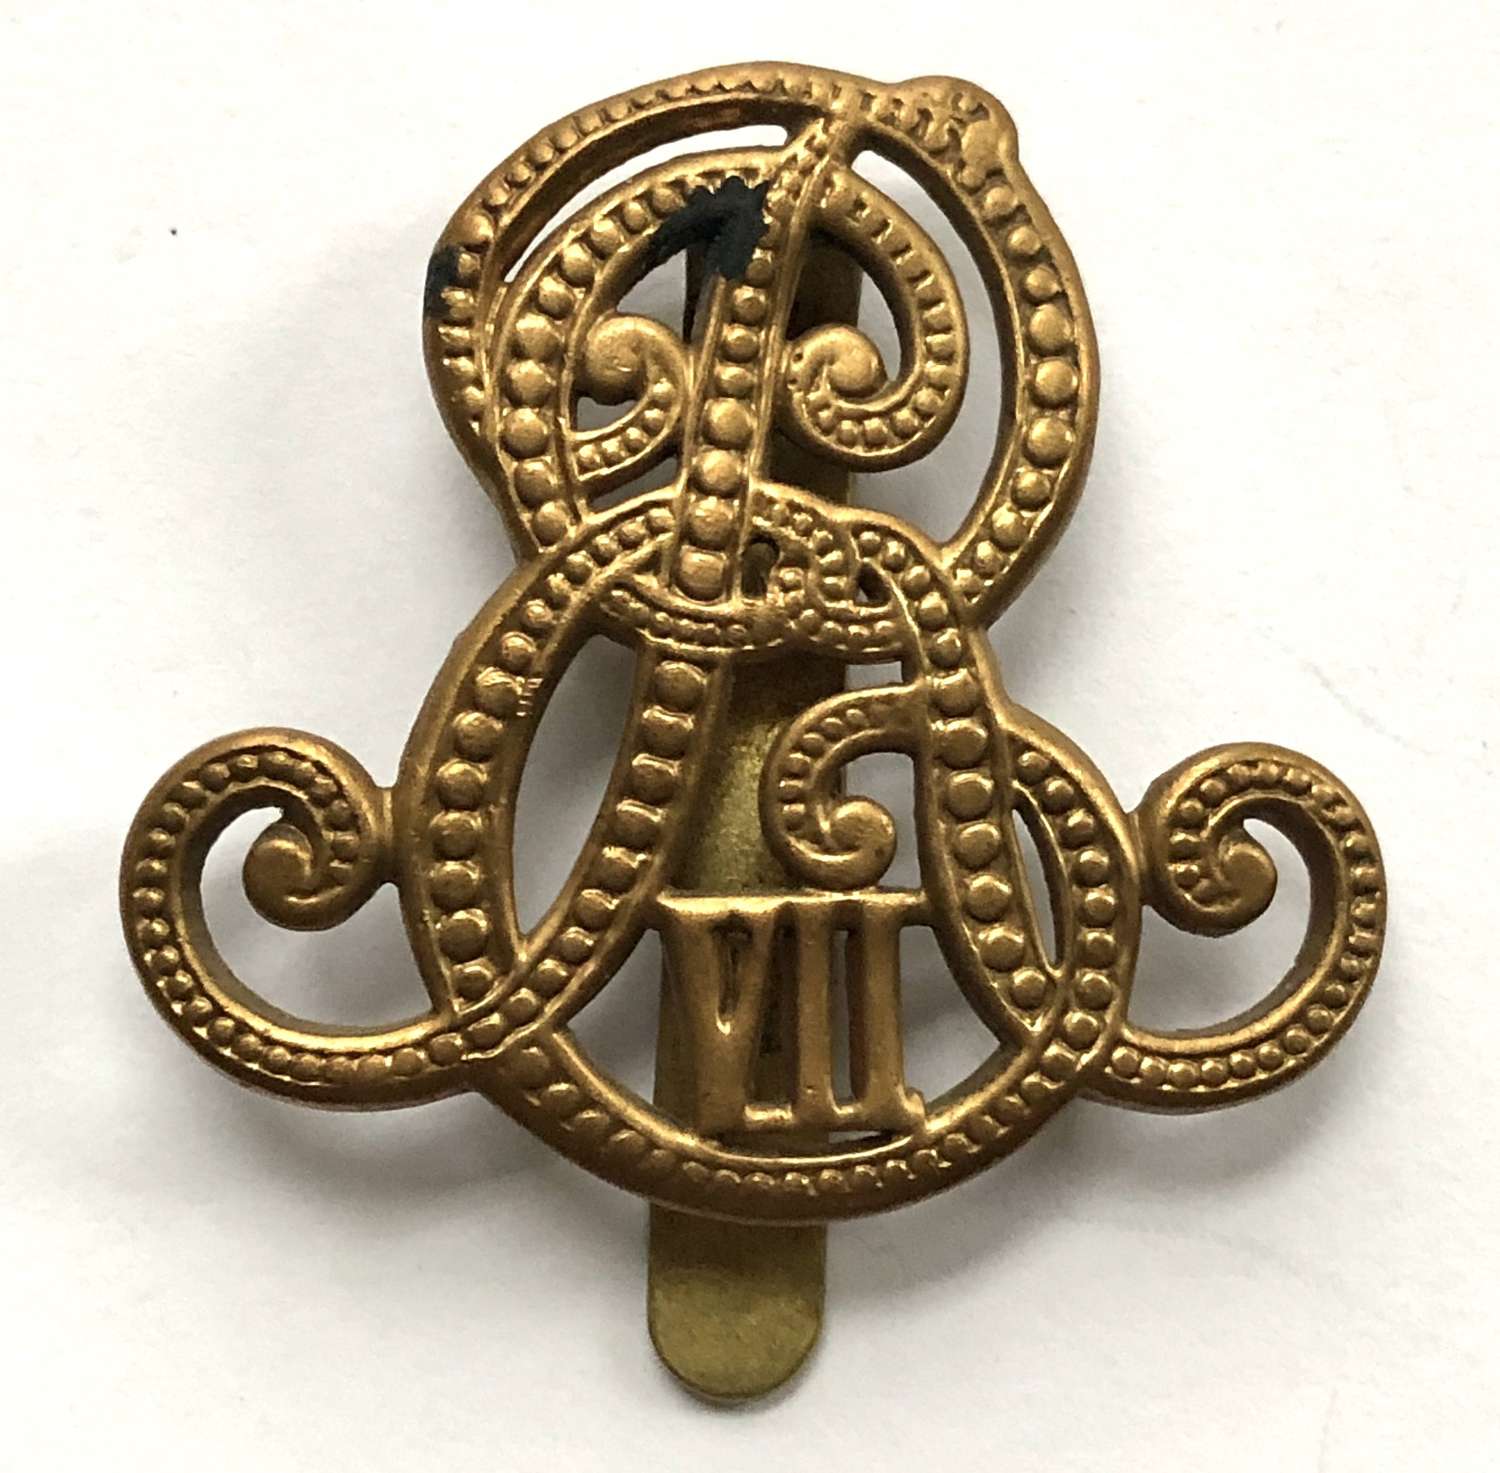 Army Recruiter Edward VII cap badge circa 1901-10